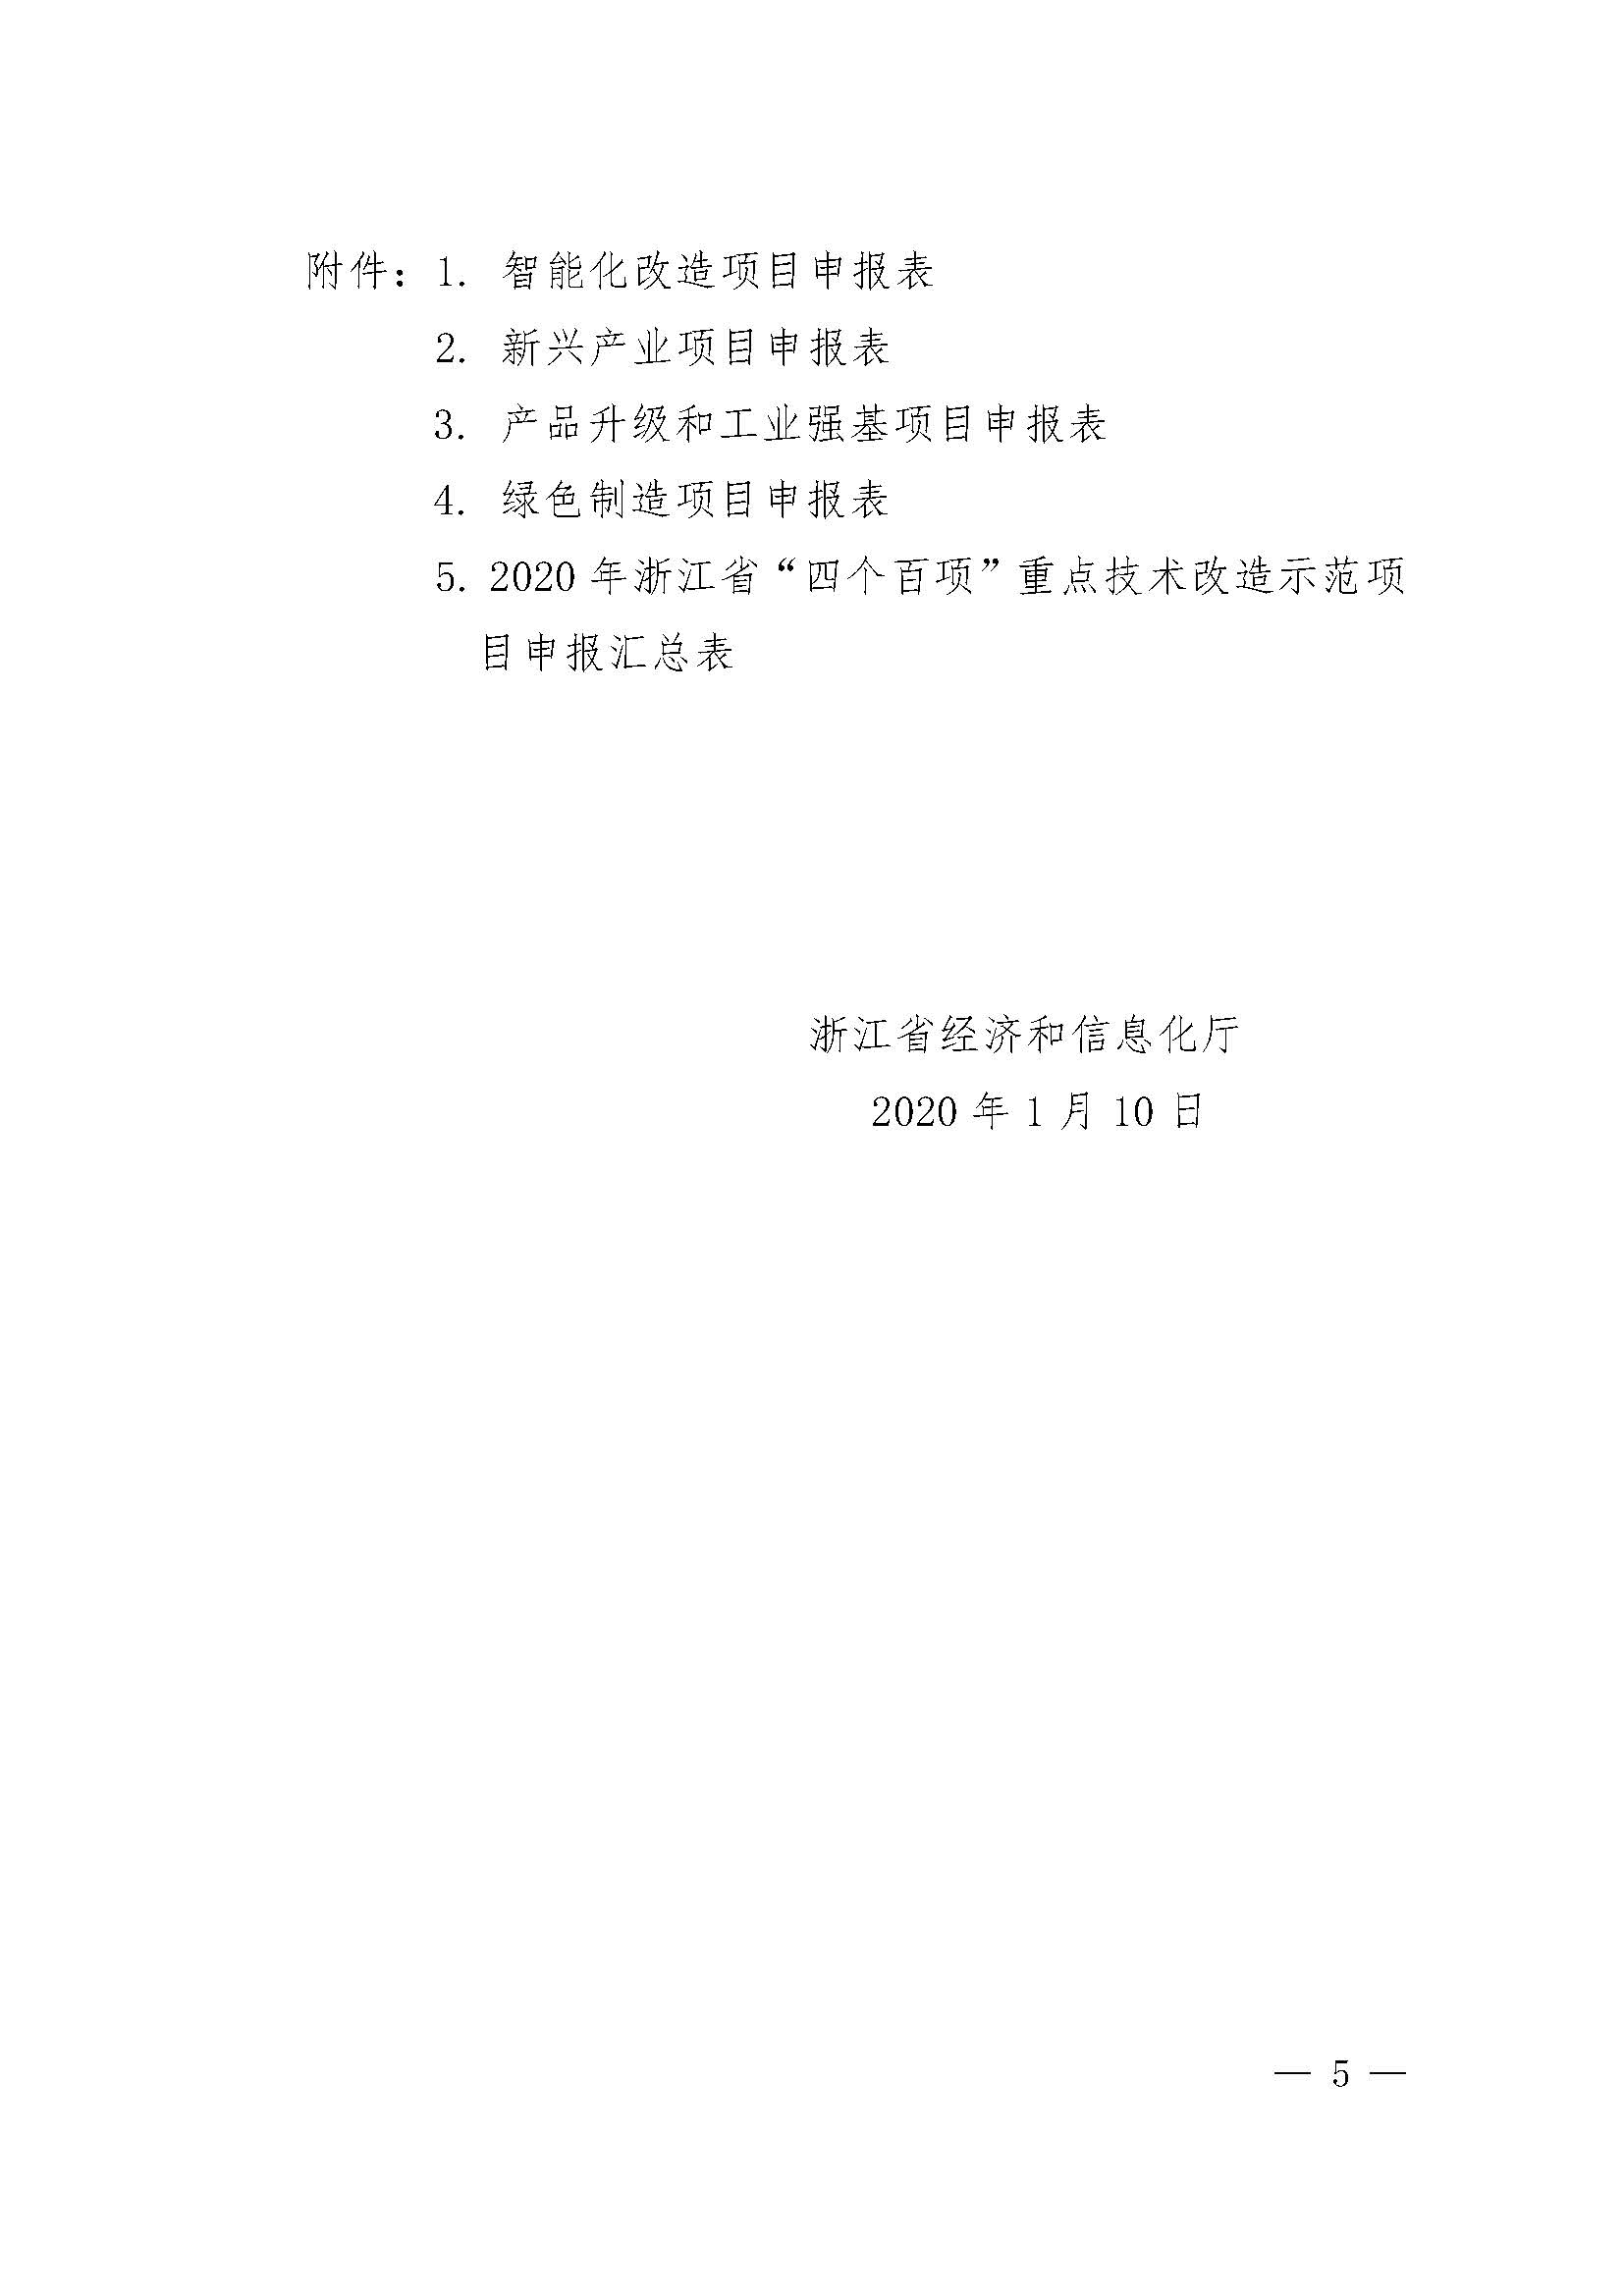 关于组织申报2020年浙江省“四个百项”重点技术改造示范项目的通知_页面_05.jpg